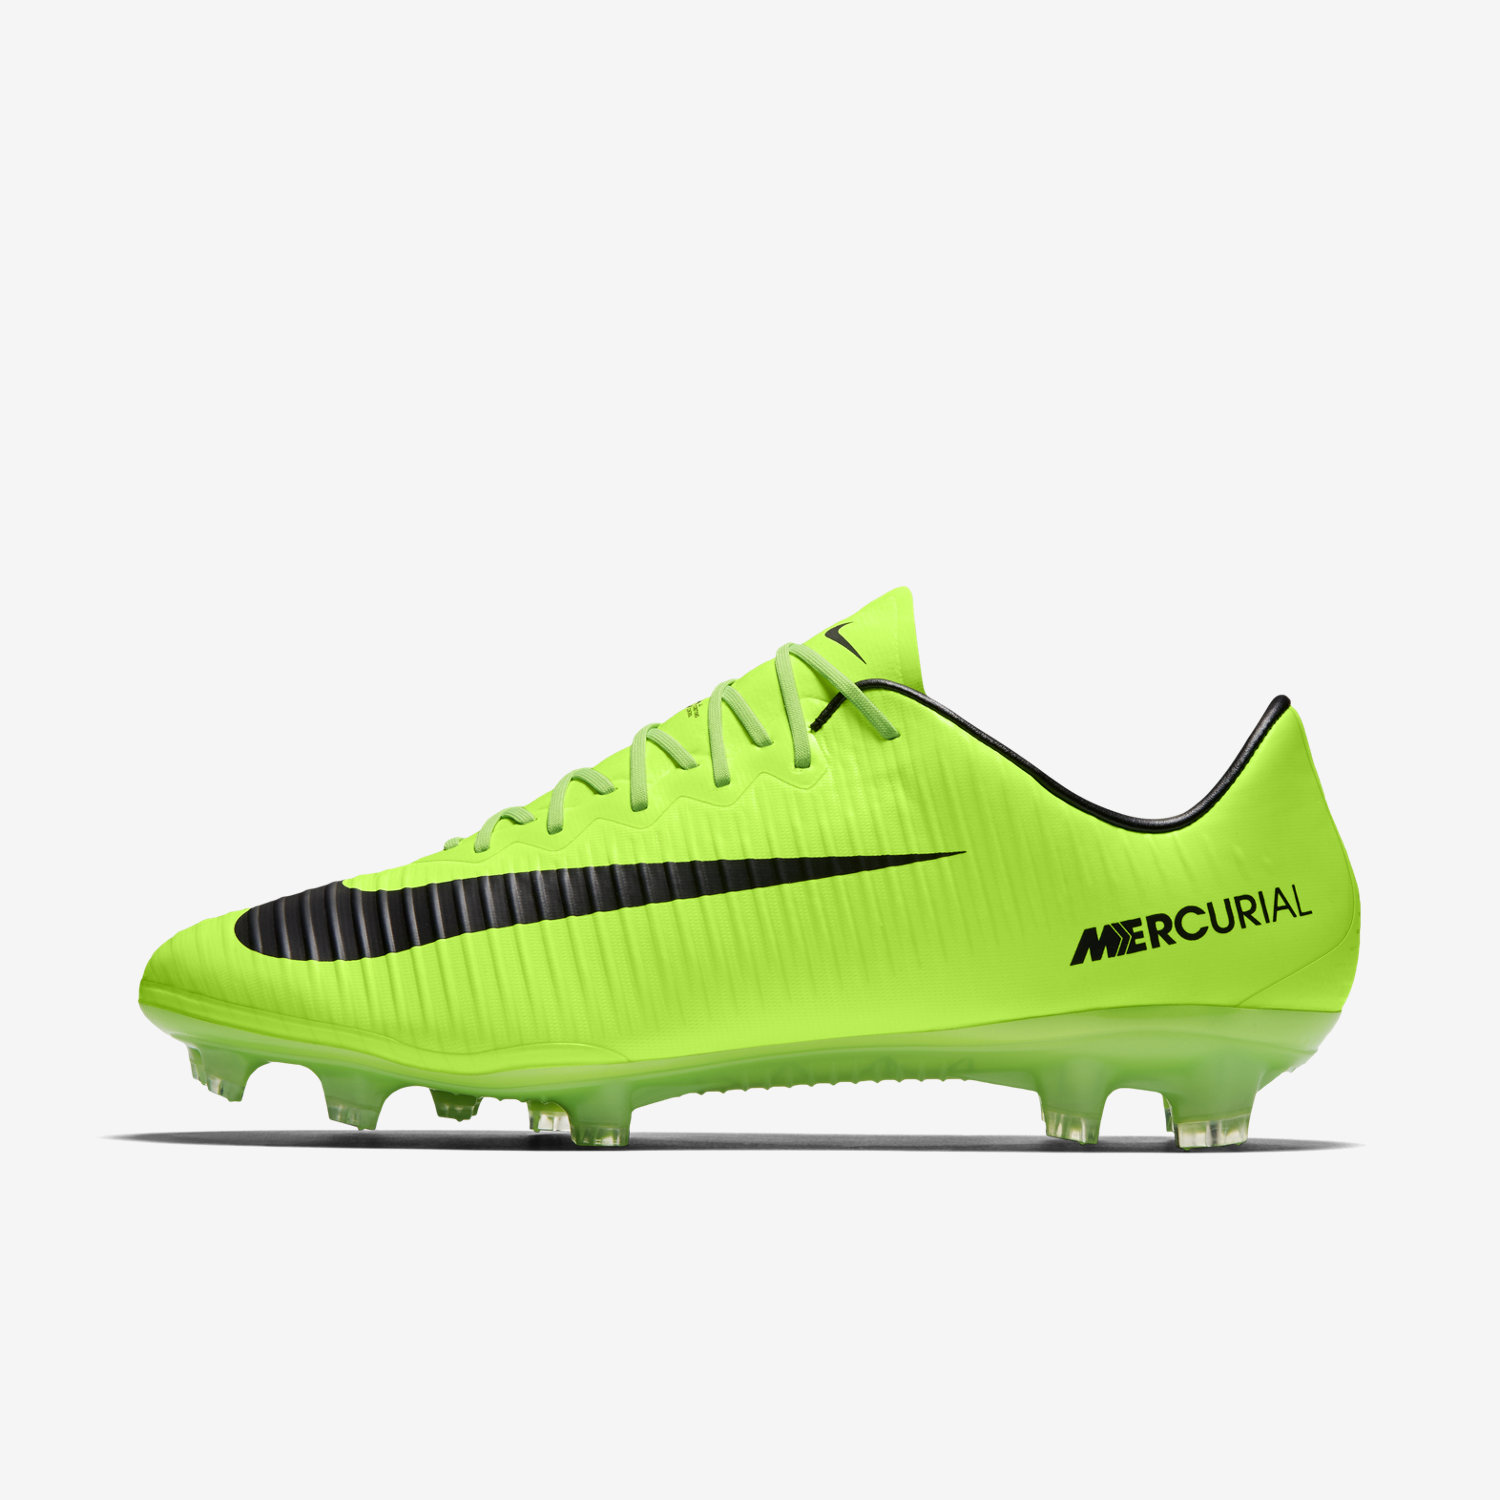 ποδοσφαιρικα παπουτσια ανδρικα Nike Mercurial Vapor XI FG πρασινο/γκρι/ασπρα/μαυρα 47699584LJ